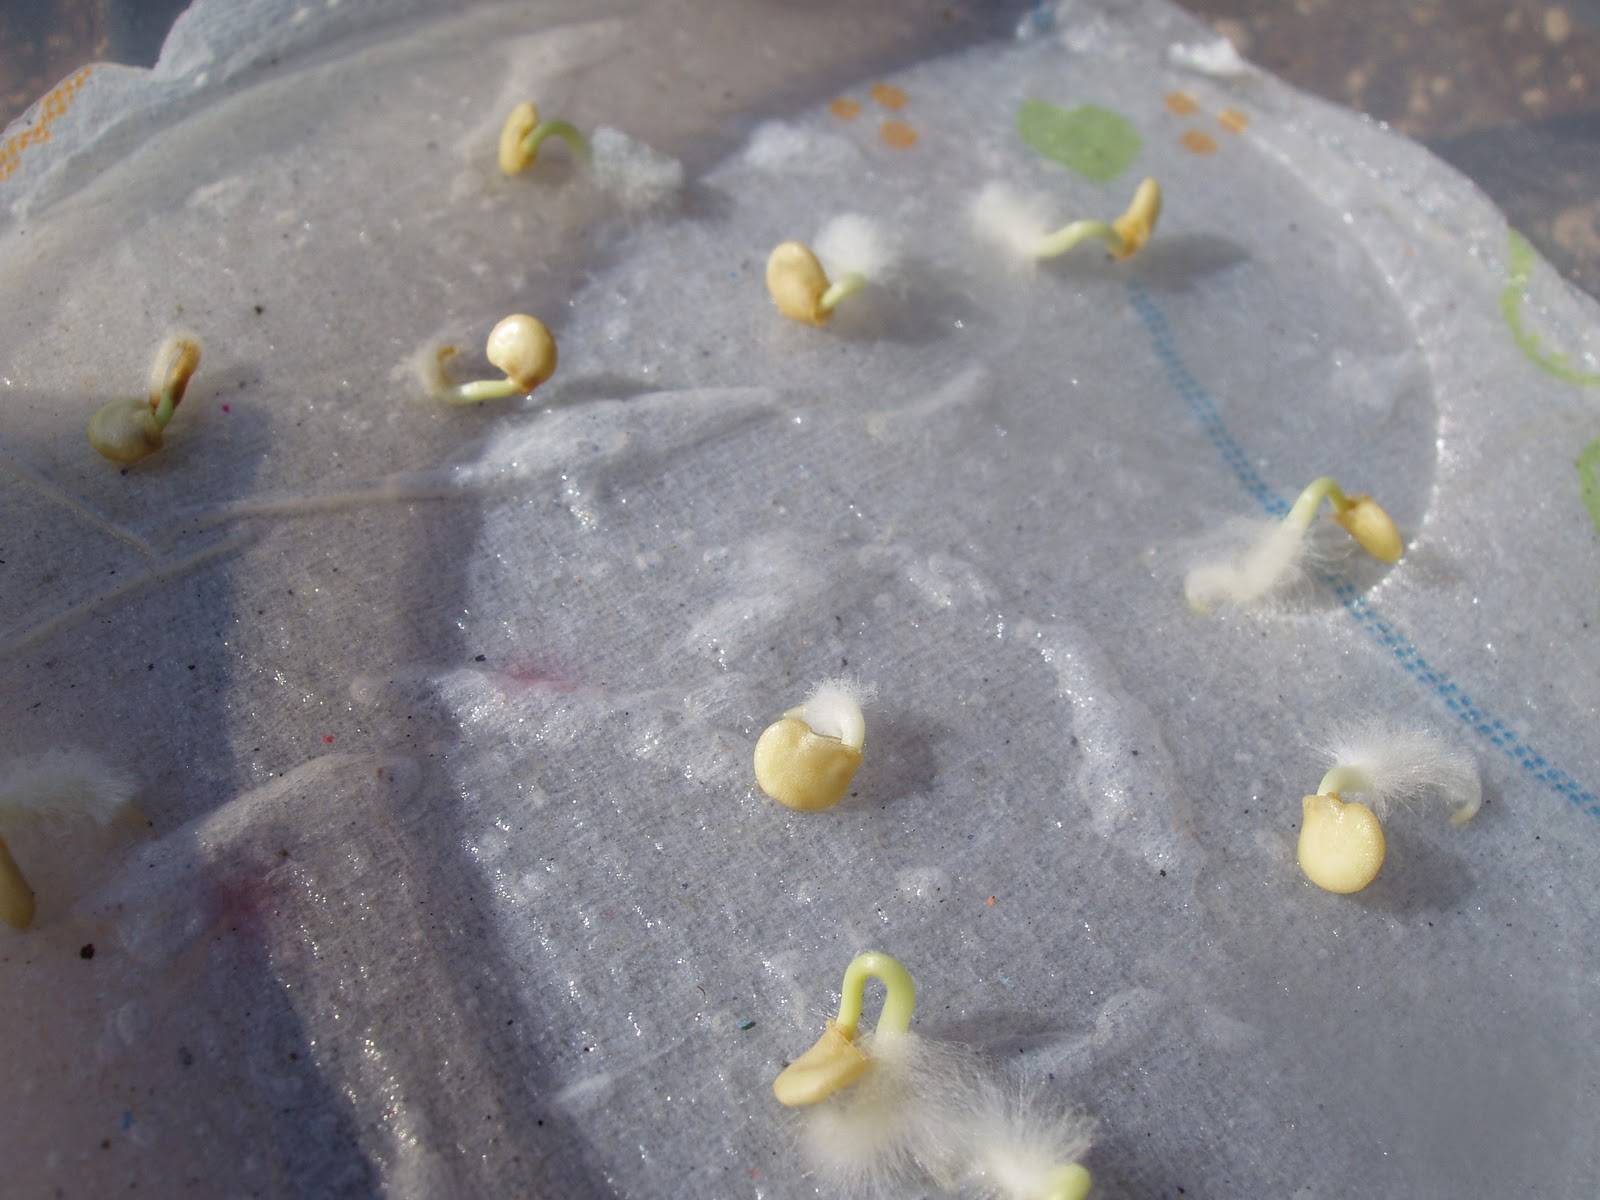 Как быстро прорастить семена огурцов в домашних условий